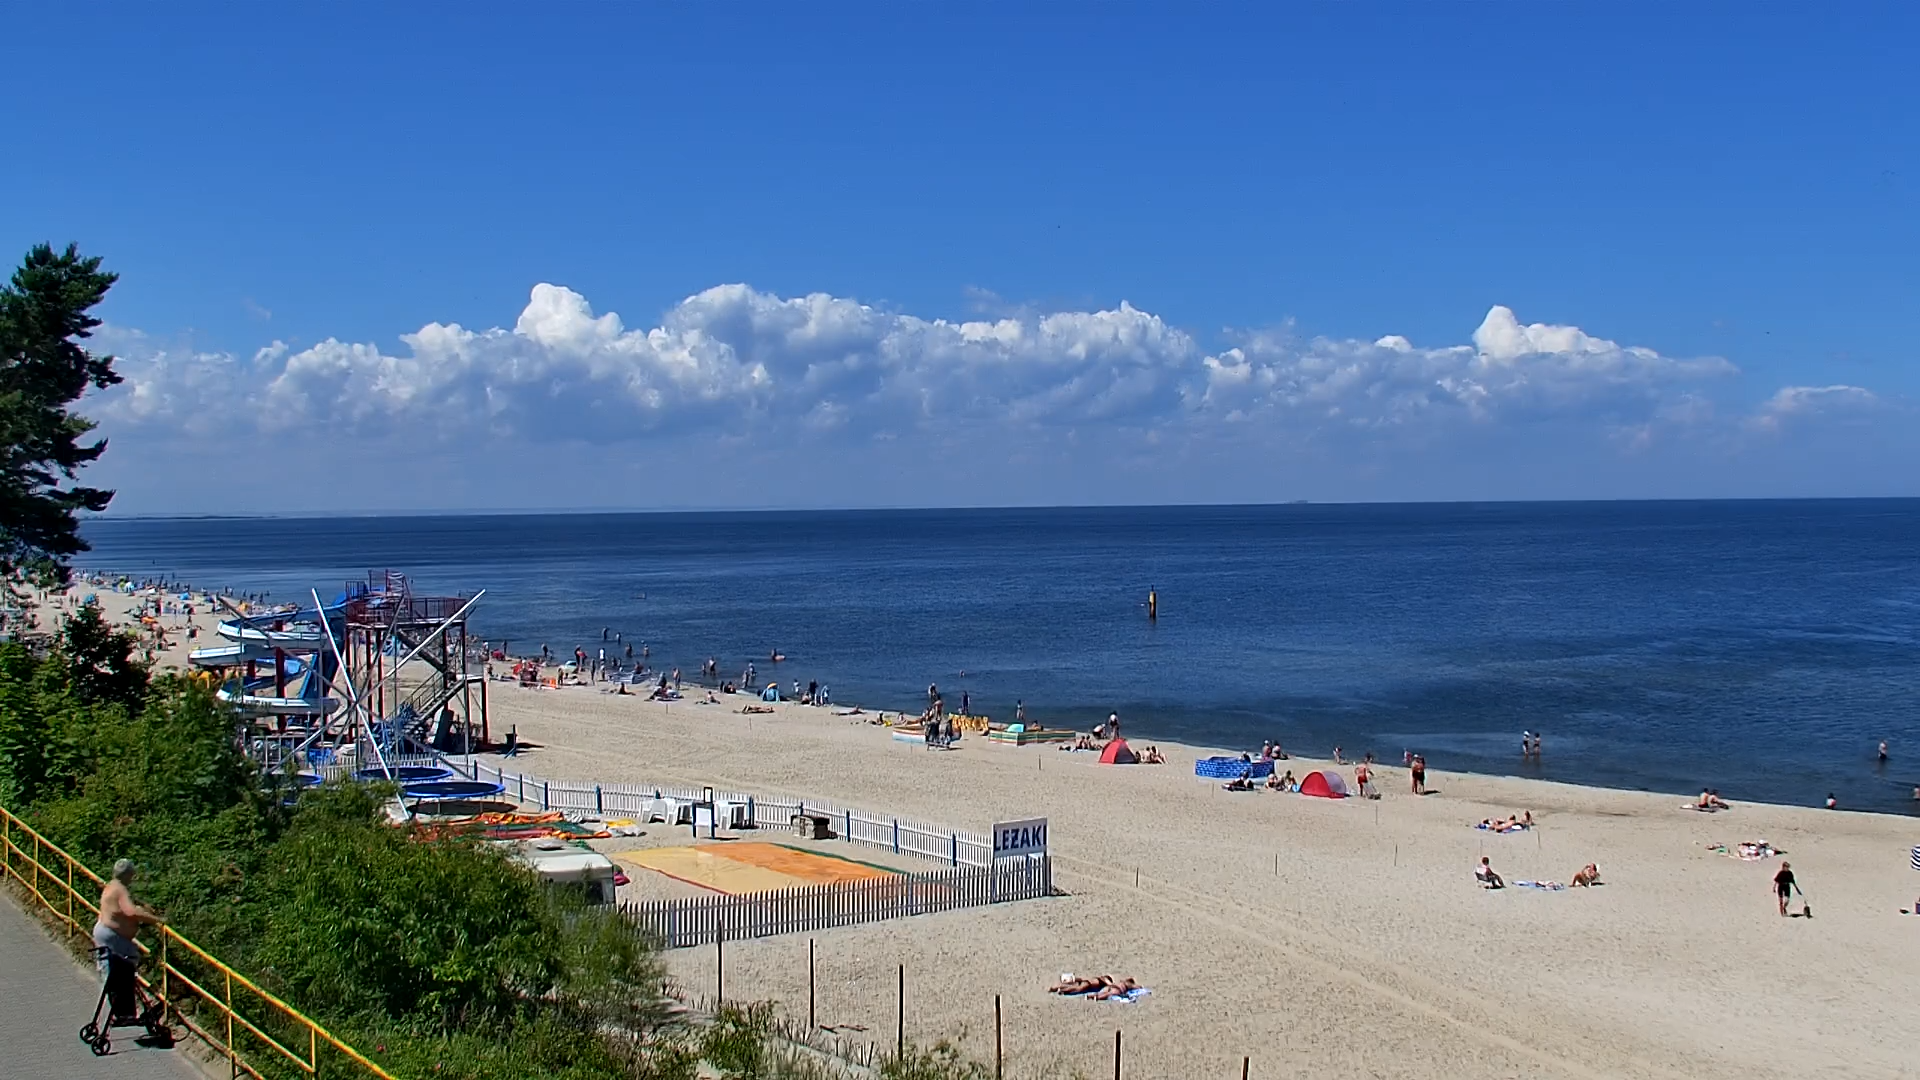 Stegna plaża: Bulwar Radiowej Jedynki. Kamera obrotowa - Aktualna pogoda&#8230;